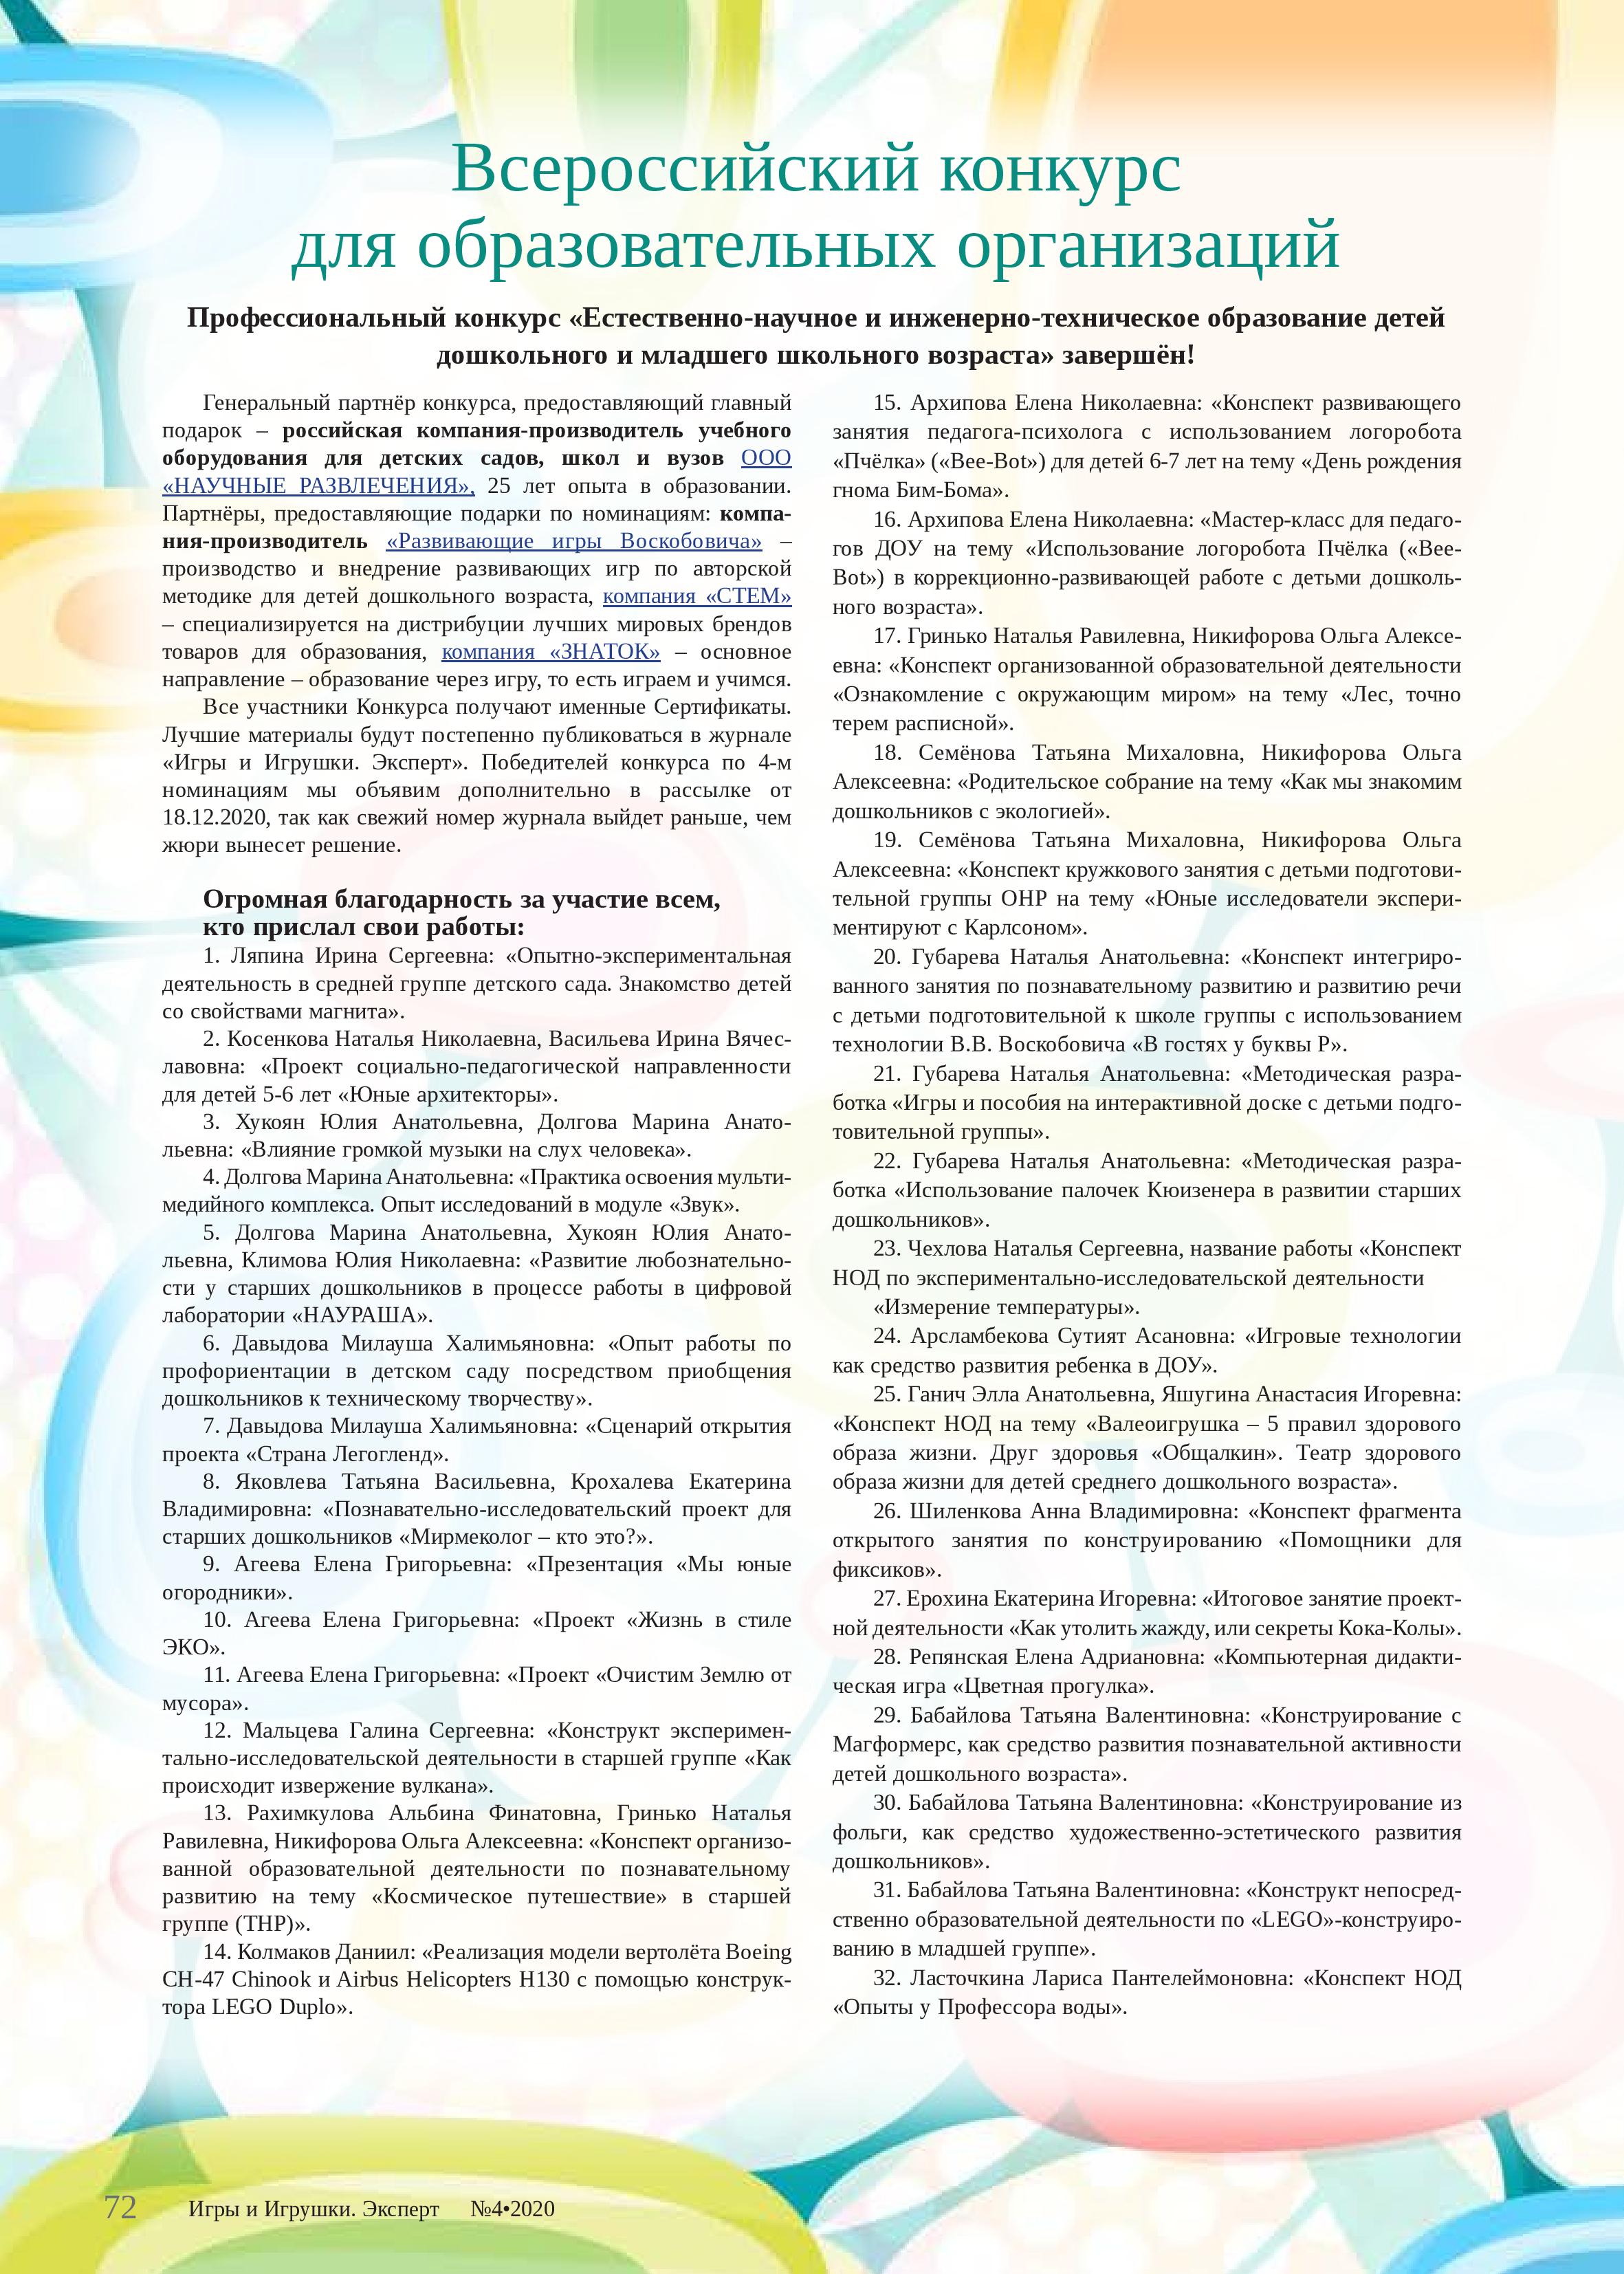 Всероссийский конкурс для образовательных организаций